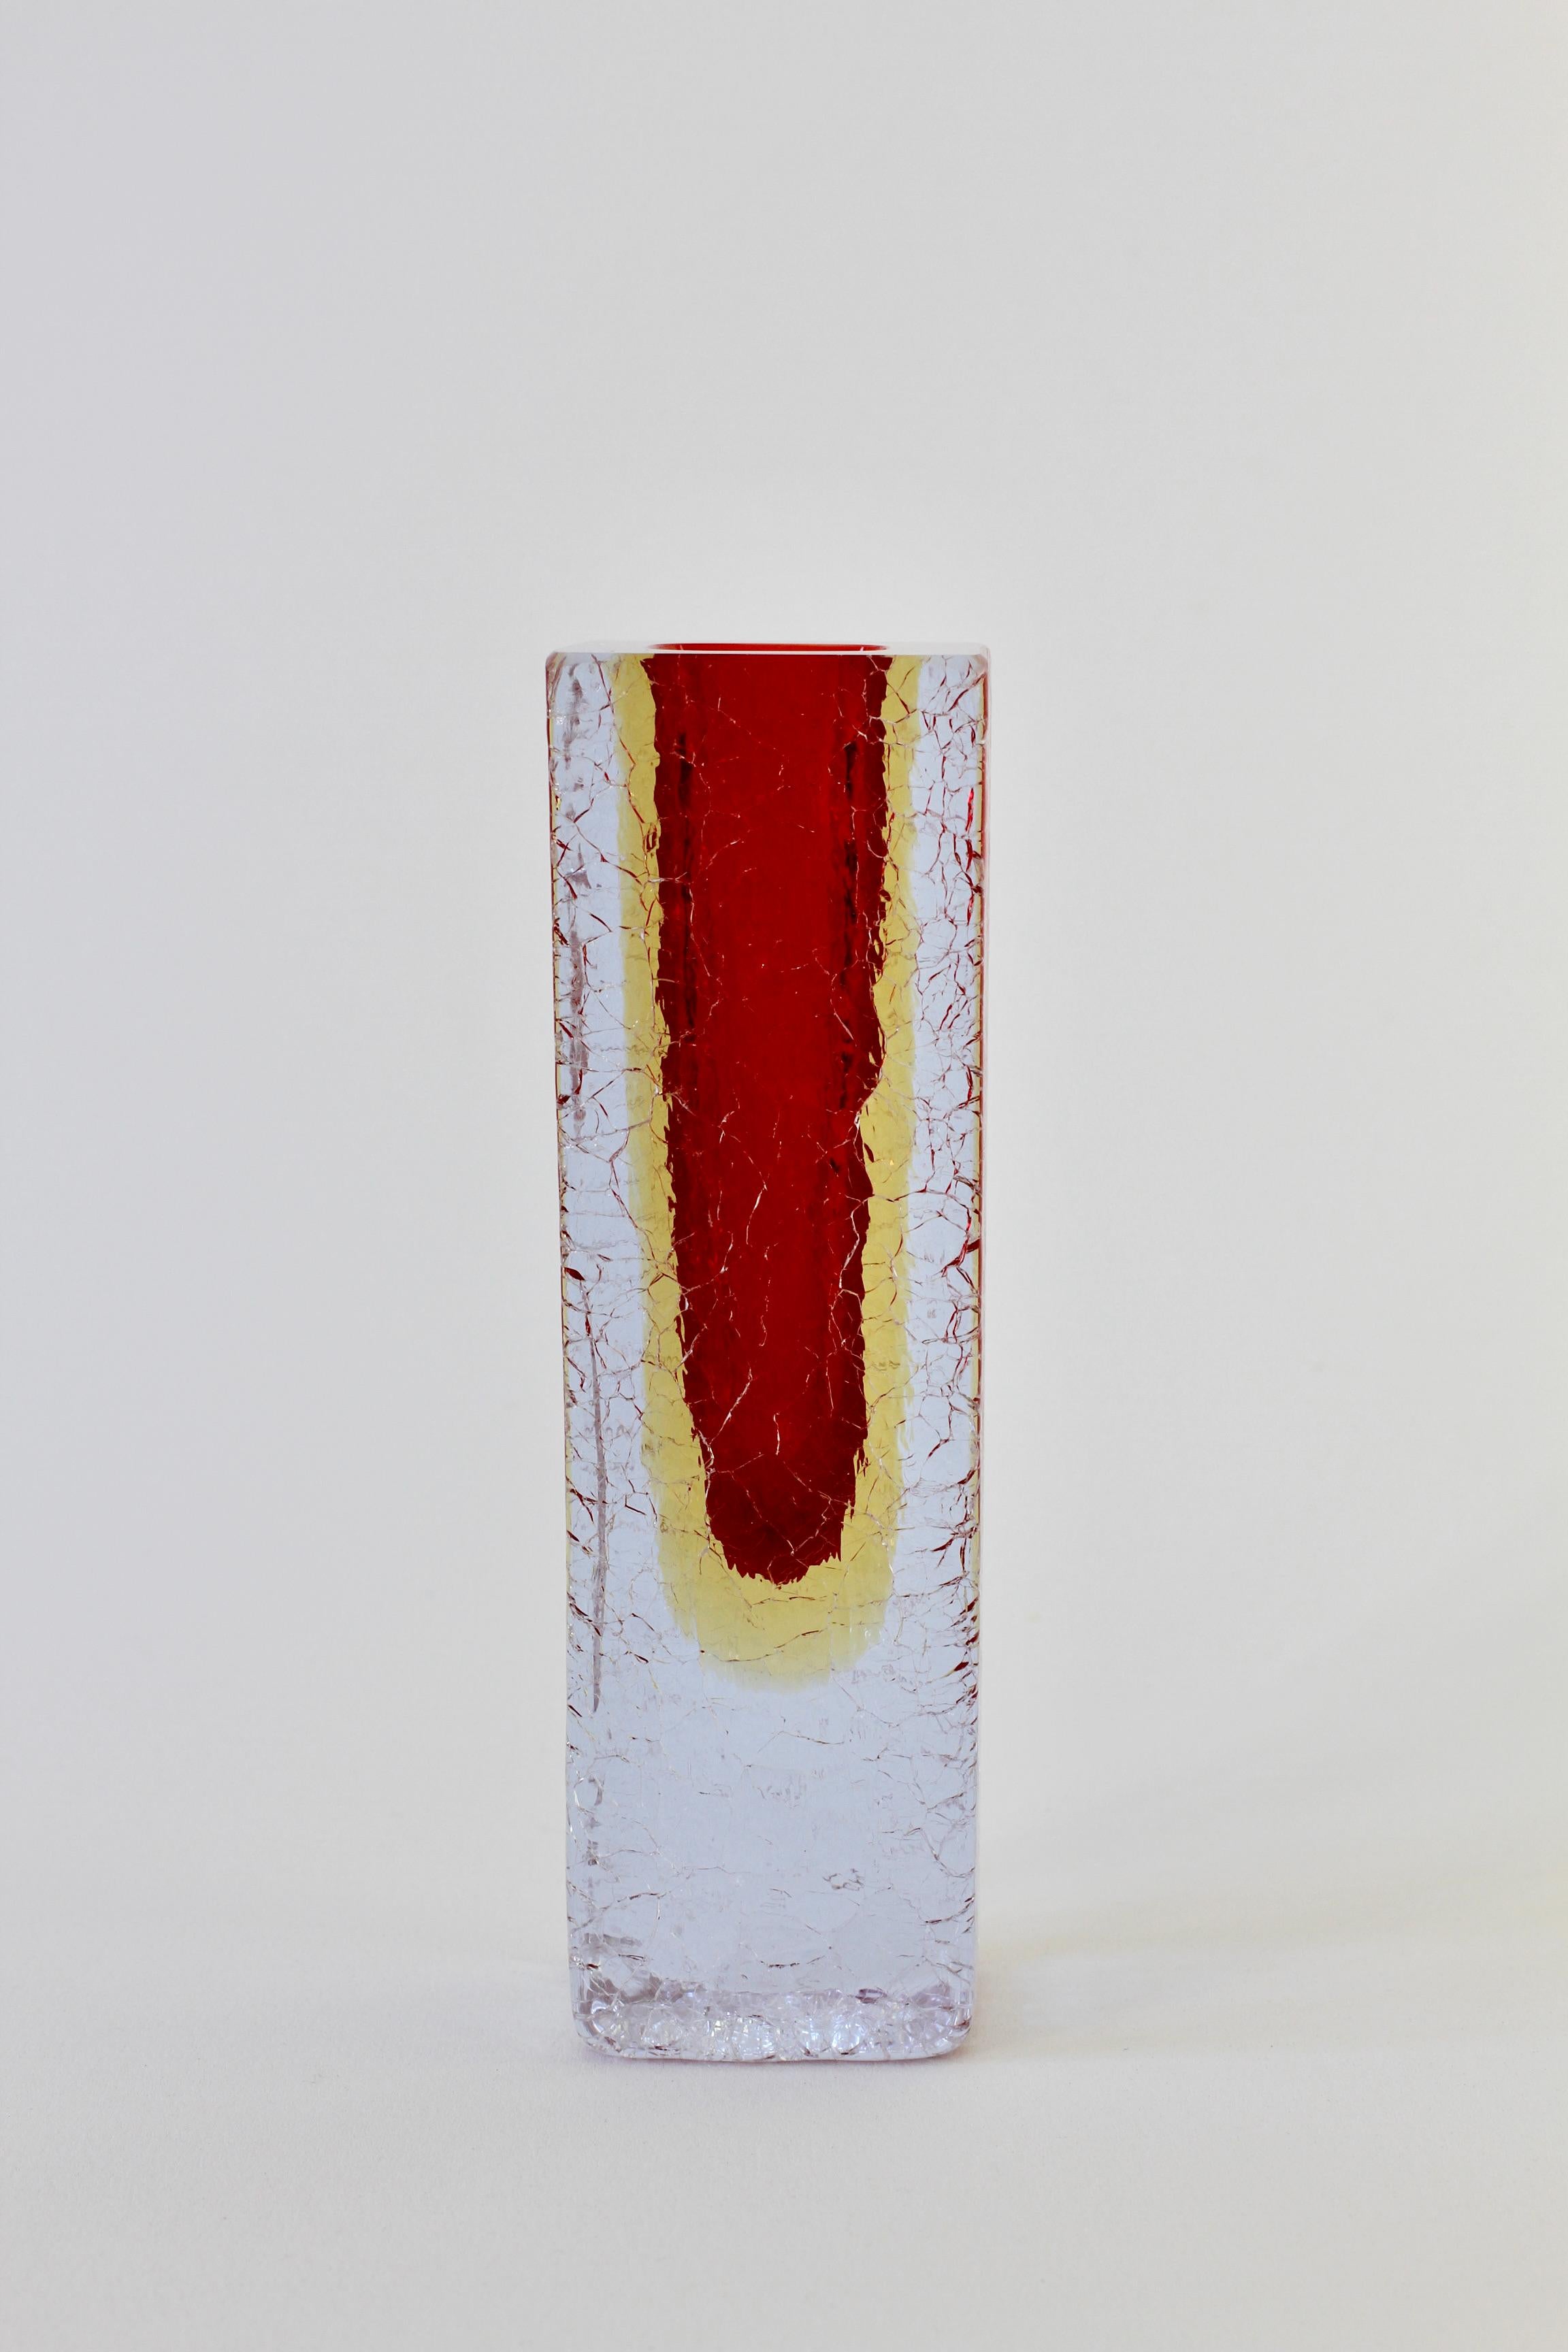 Wunderschöne italienische, venezianische Vase aus facettiertem Muranoglas, ca. 1960er Jahre. Eine seltene und absolut schöne Farbkombination aus rubinrotem, gelbem und helllila/klarem 'Sommerso' oder 'Submerged' Glas. Sie werden oft Flavio Poli für